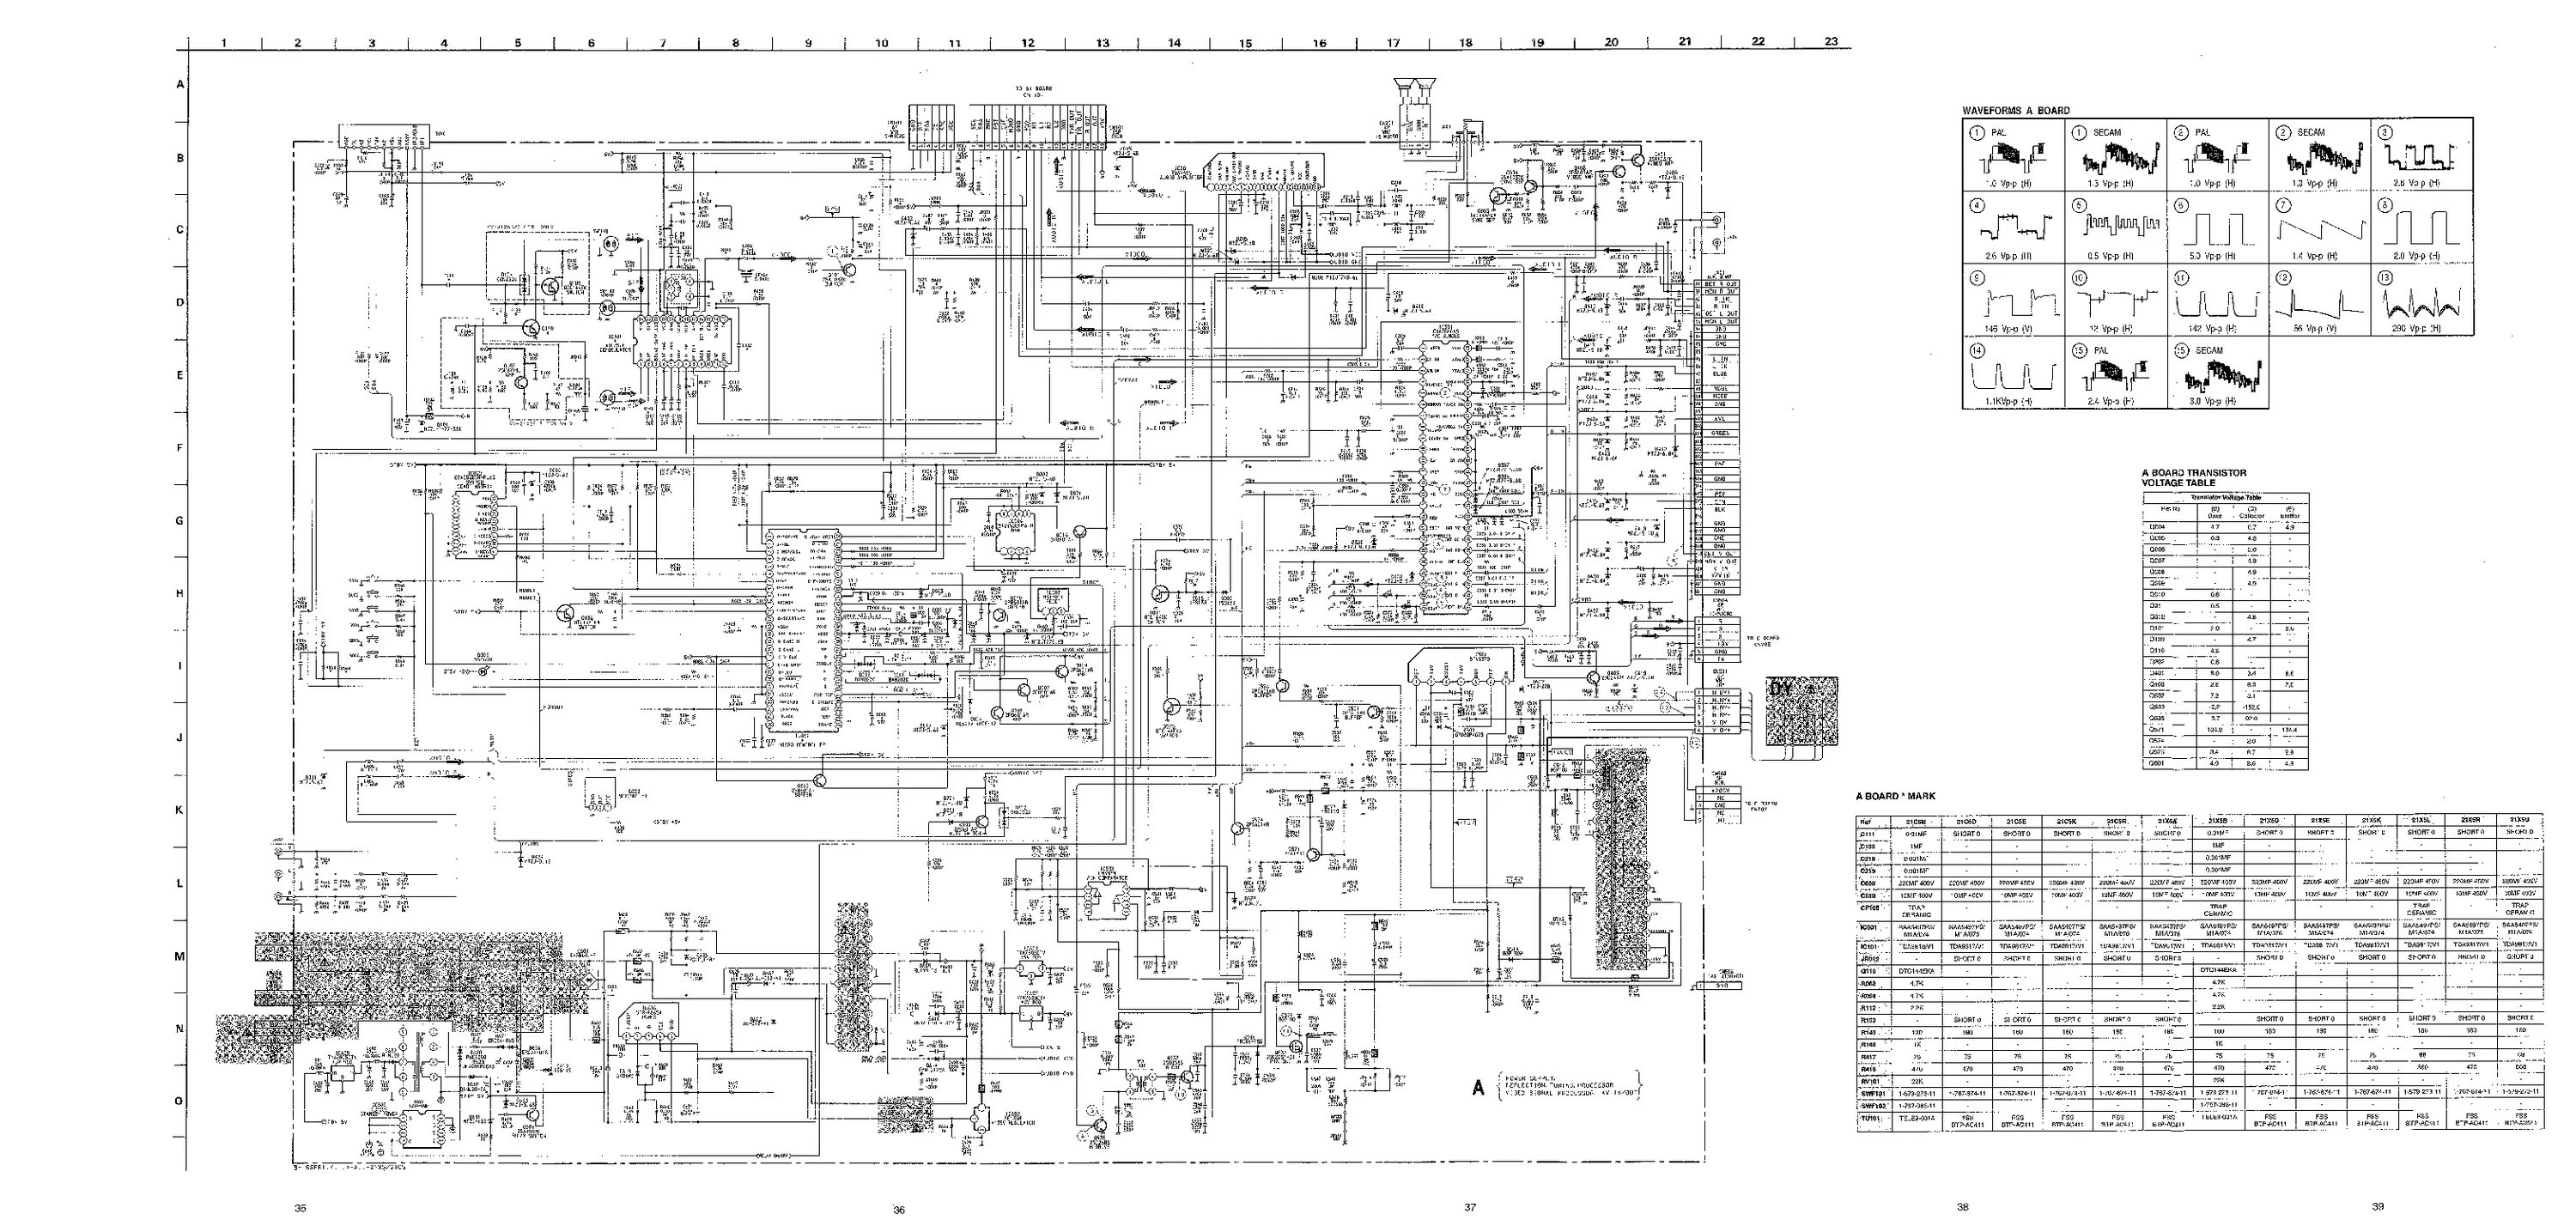 Sony KV-25e1r service manual. Sony шасси Fe-2. Телевизор Sony KV-14t1r схема. Телевизор сони KV-g21м1 схема.